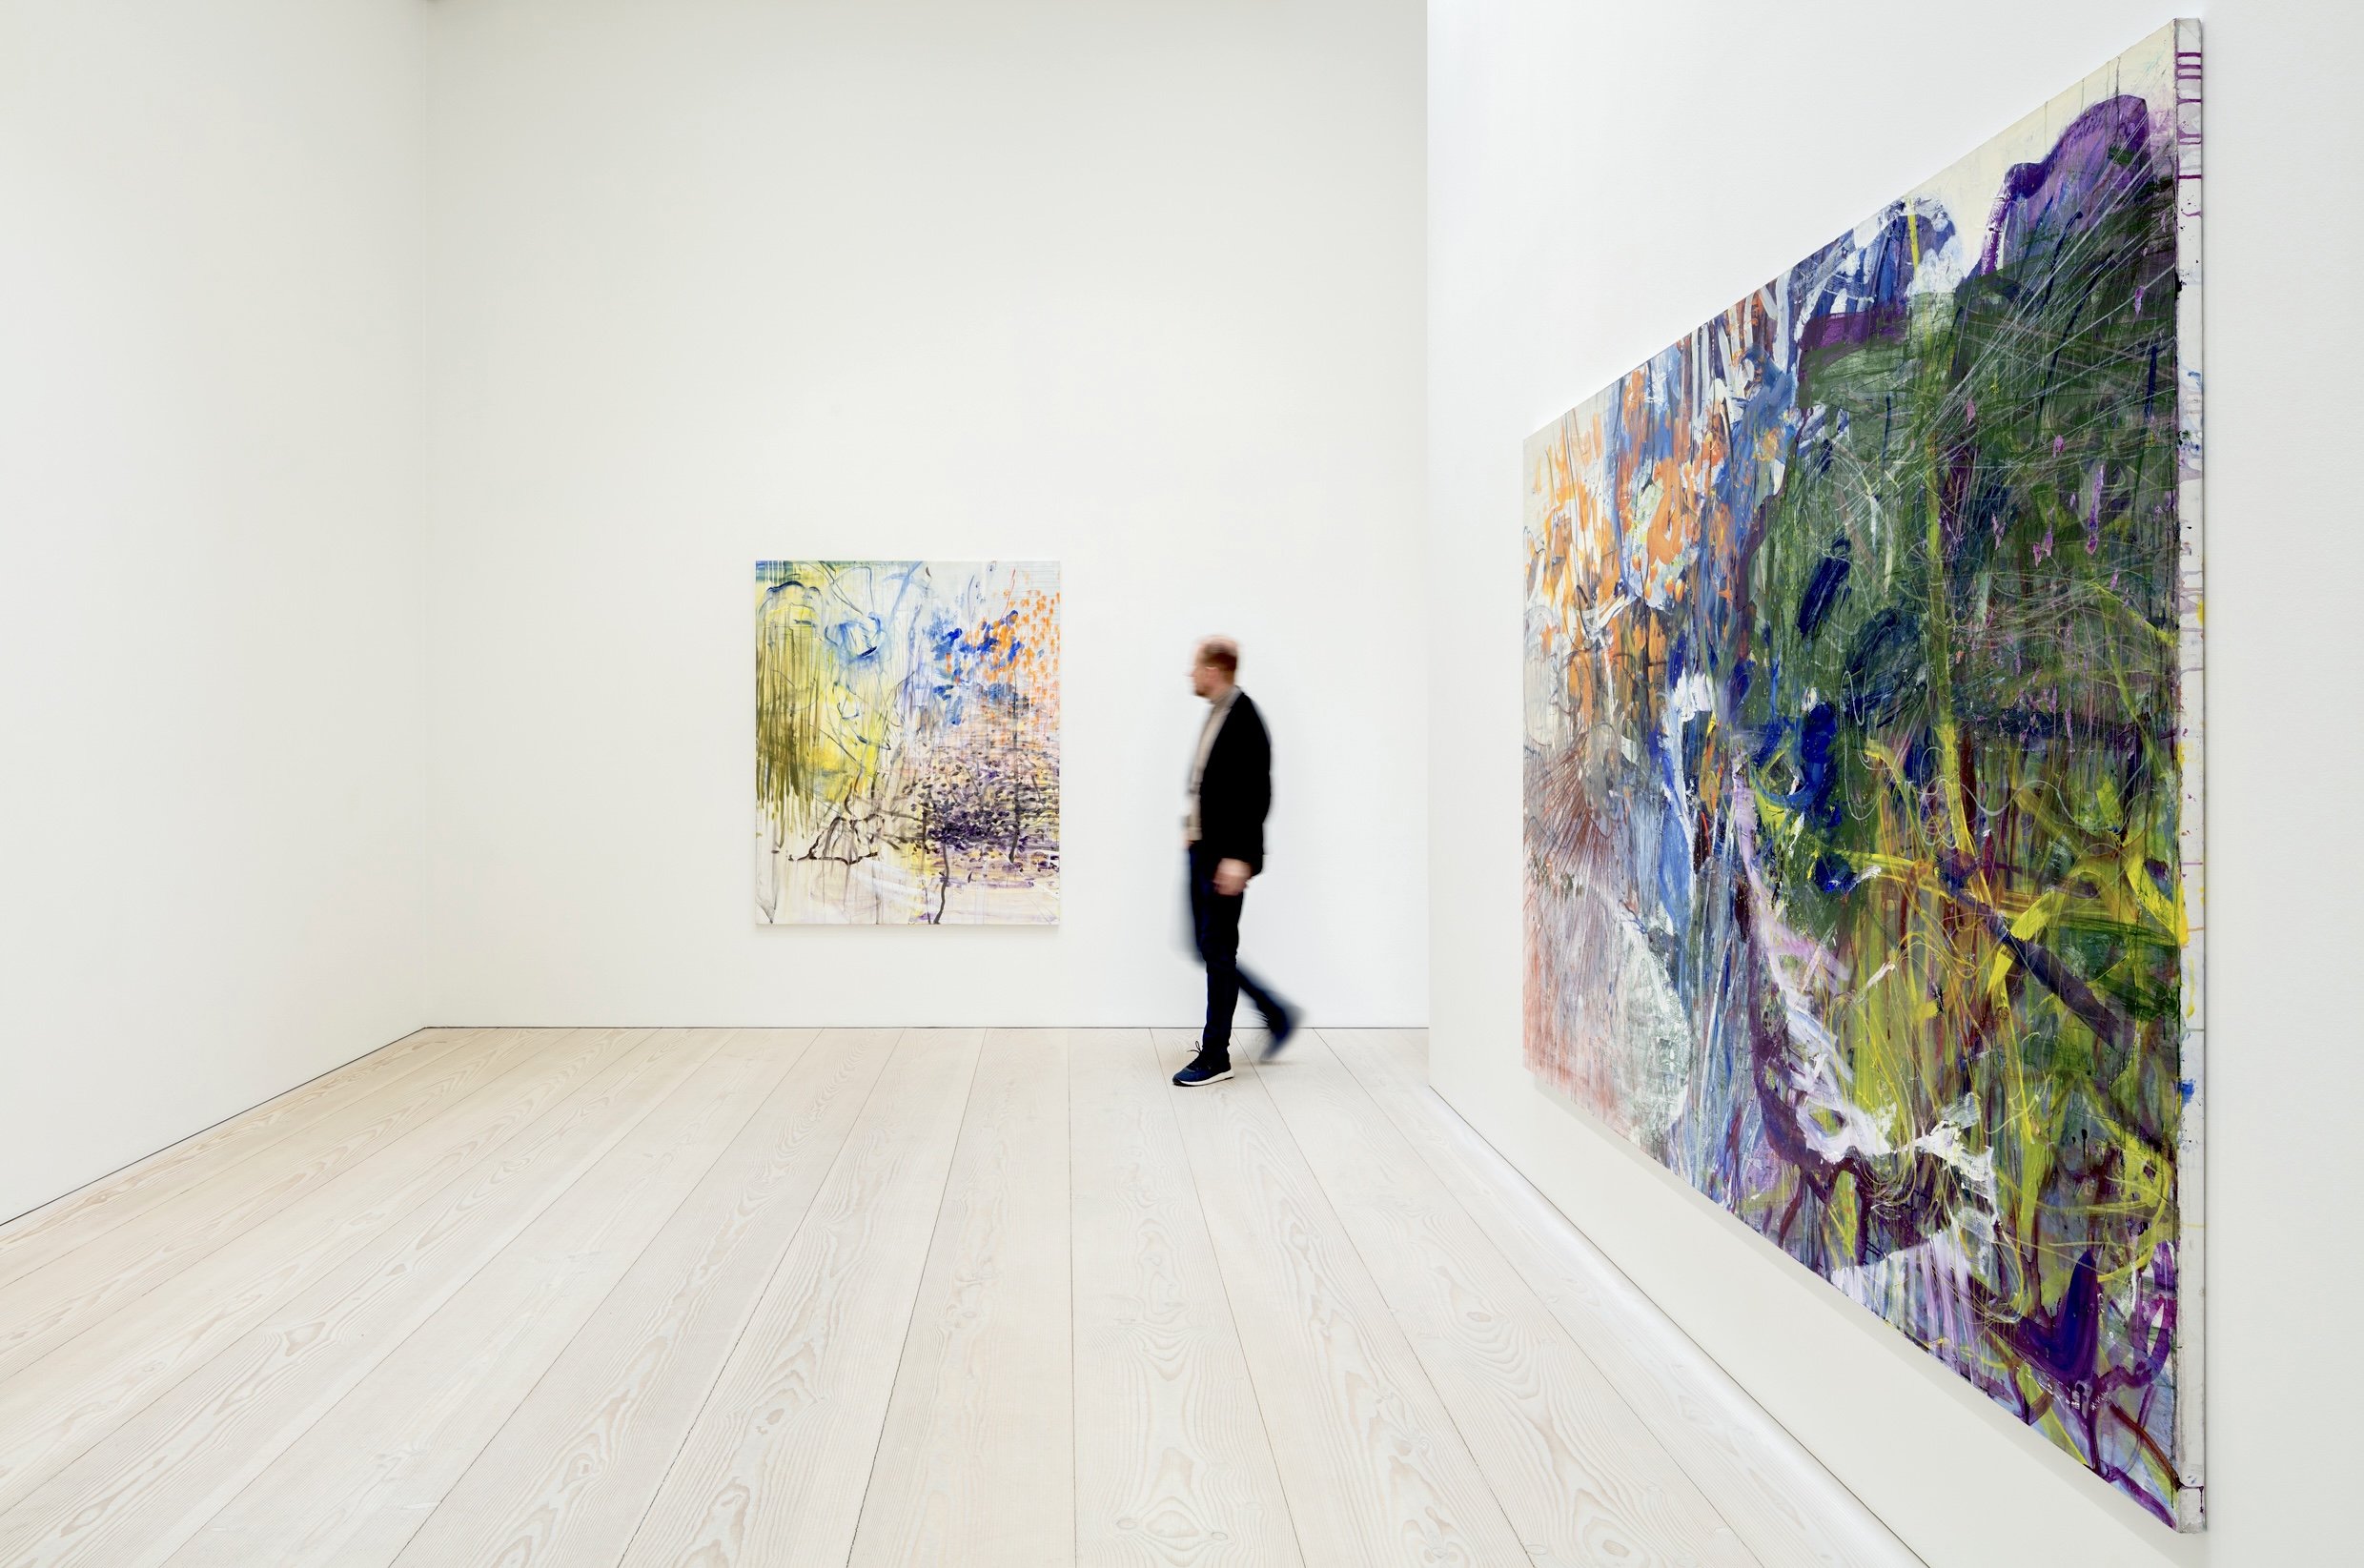  Exhibitionview “A Journey” I Galerie Forsblom, Helsinki I 2023 